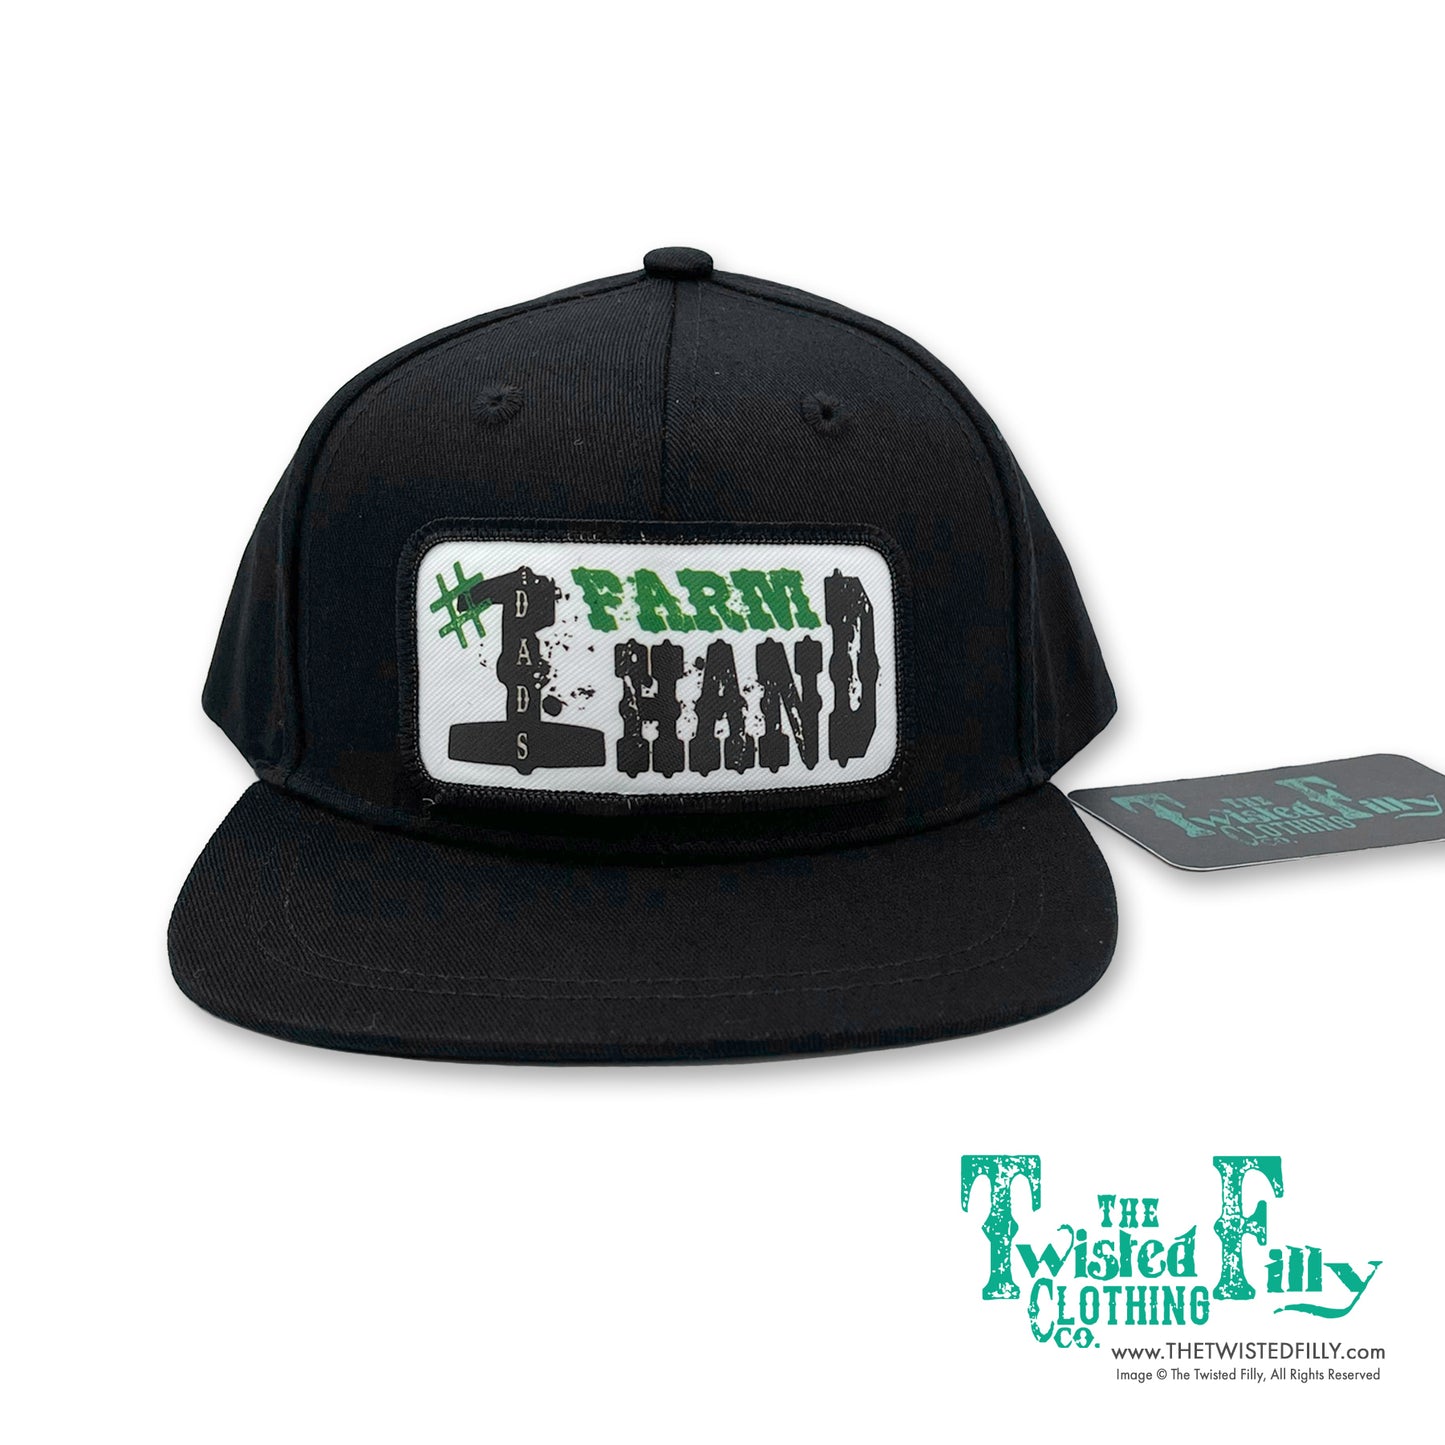 Dads #1 Farm Hand - Infant / Toddler Snapback Hat - Black